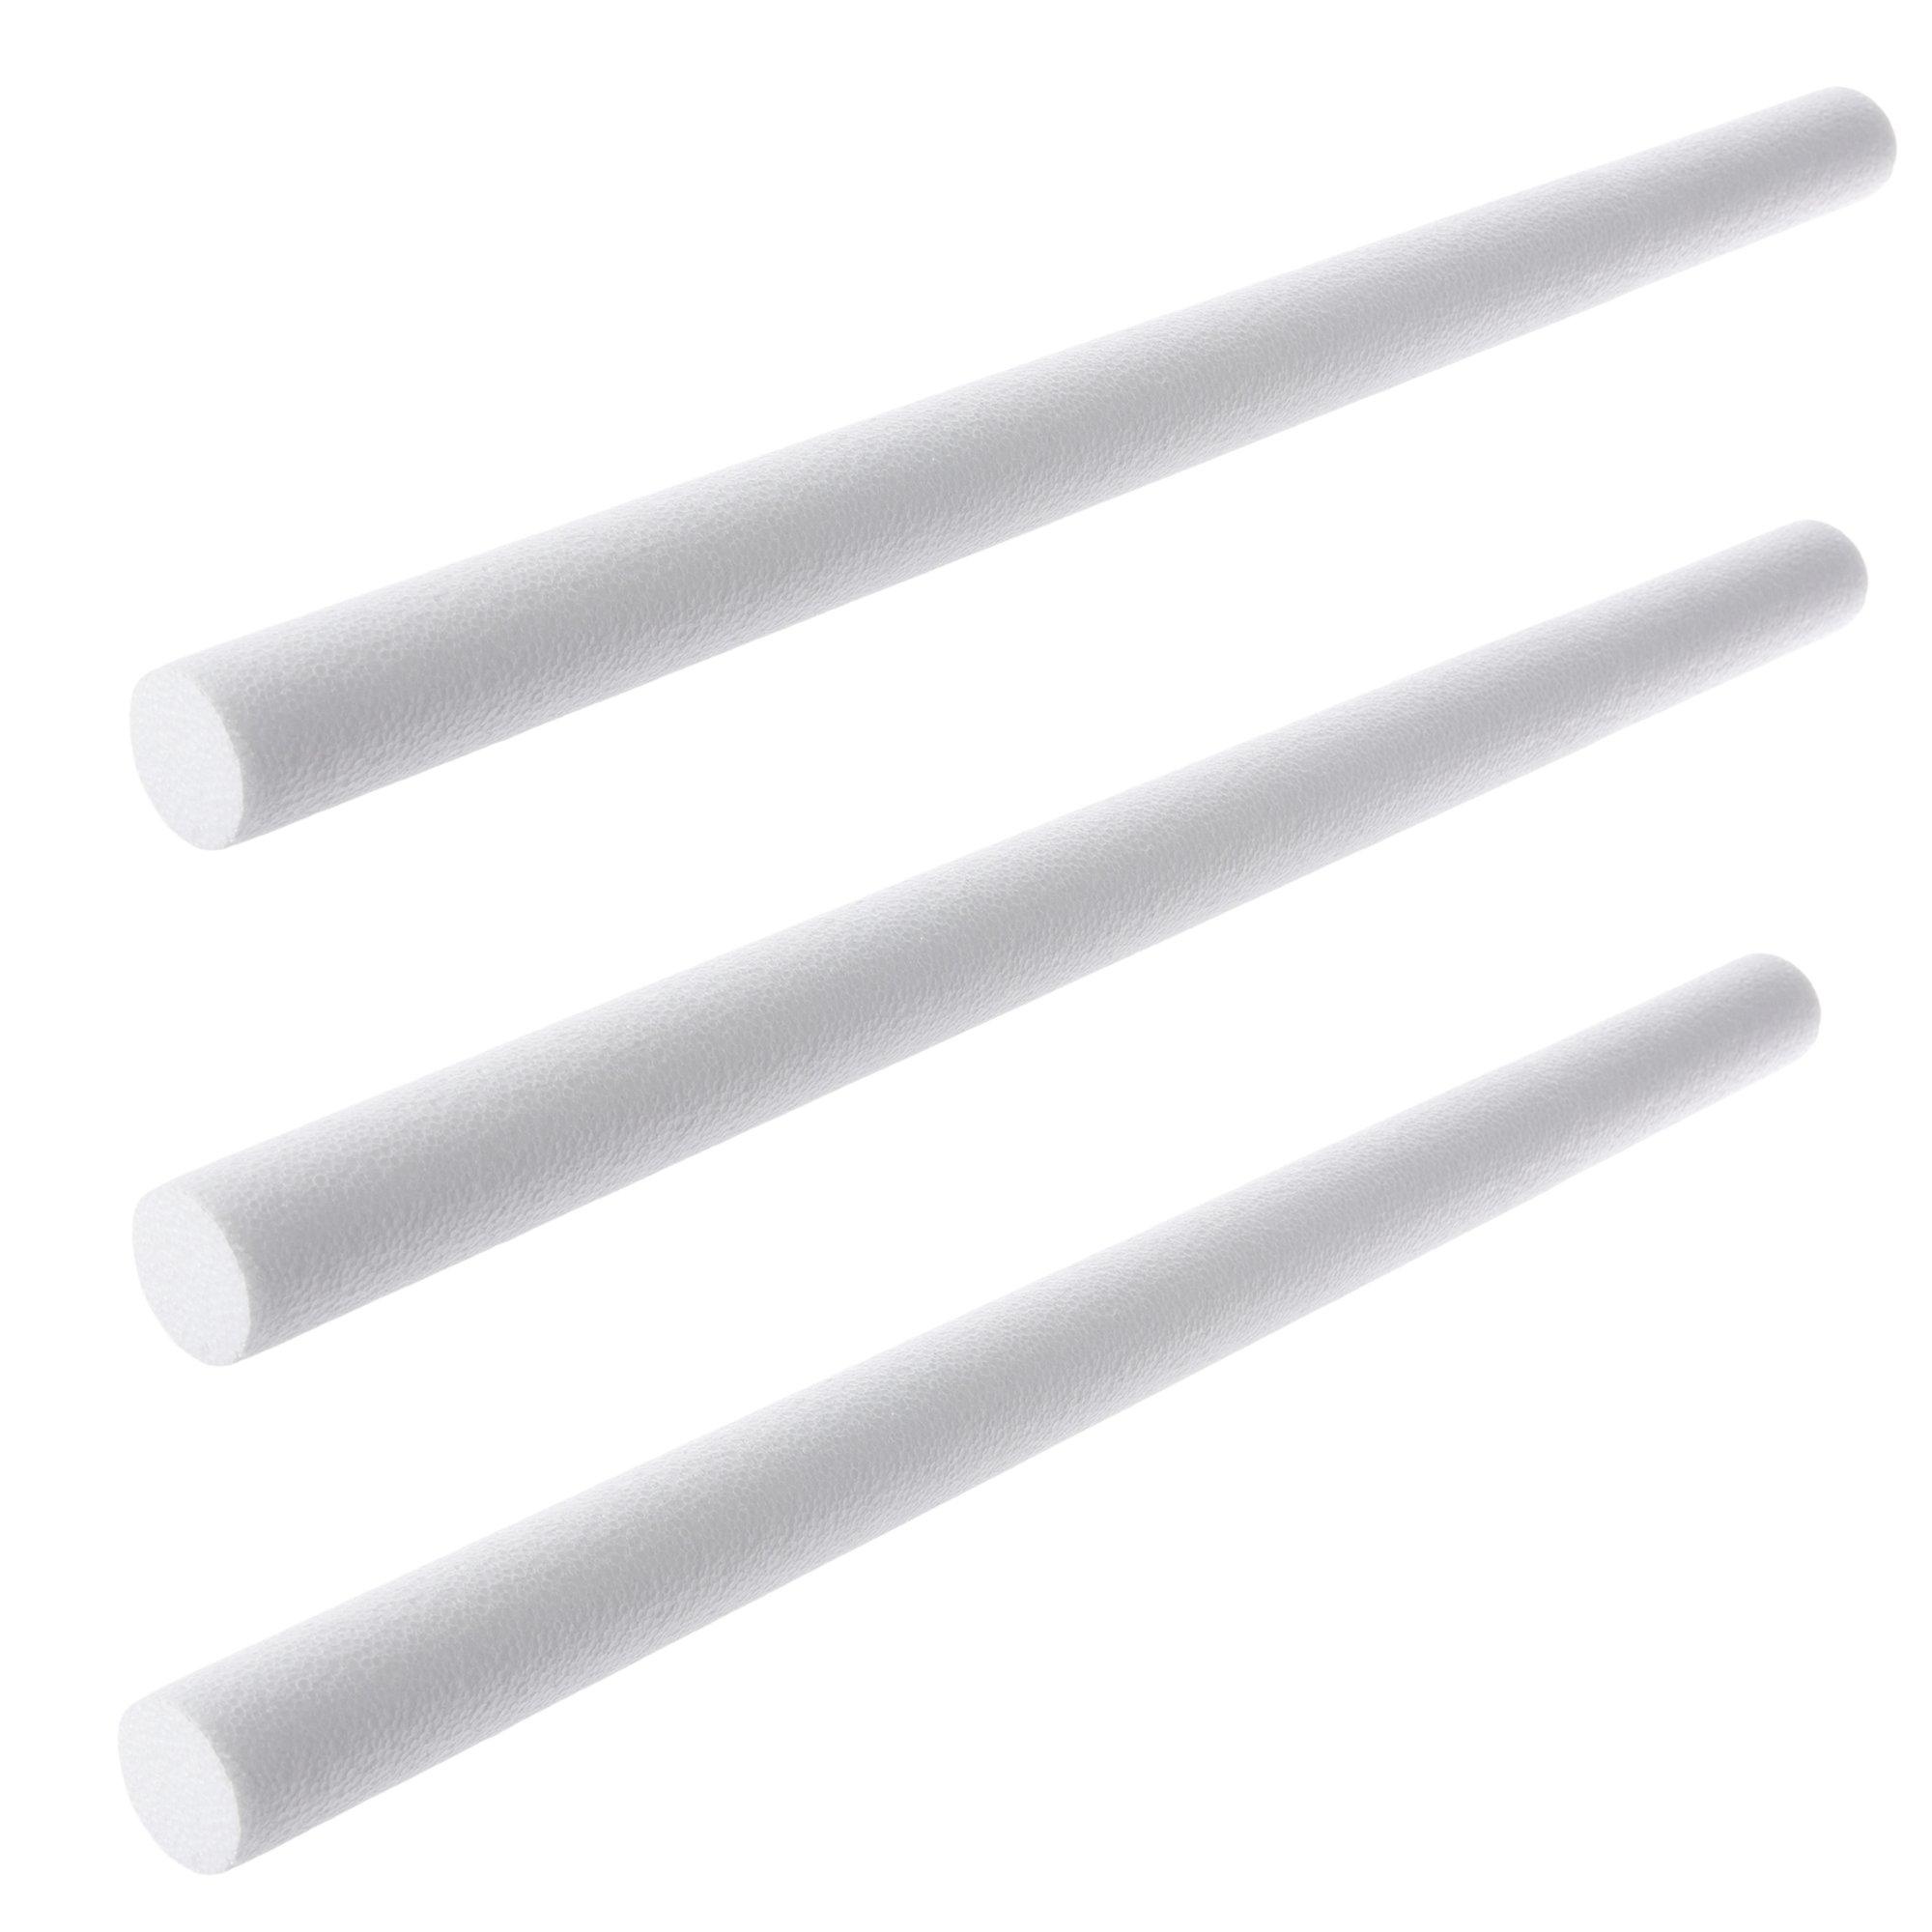 White Medium Tack Quick-Stick Foam Board - 20 x 30